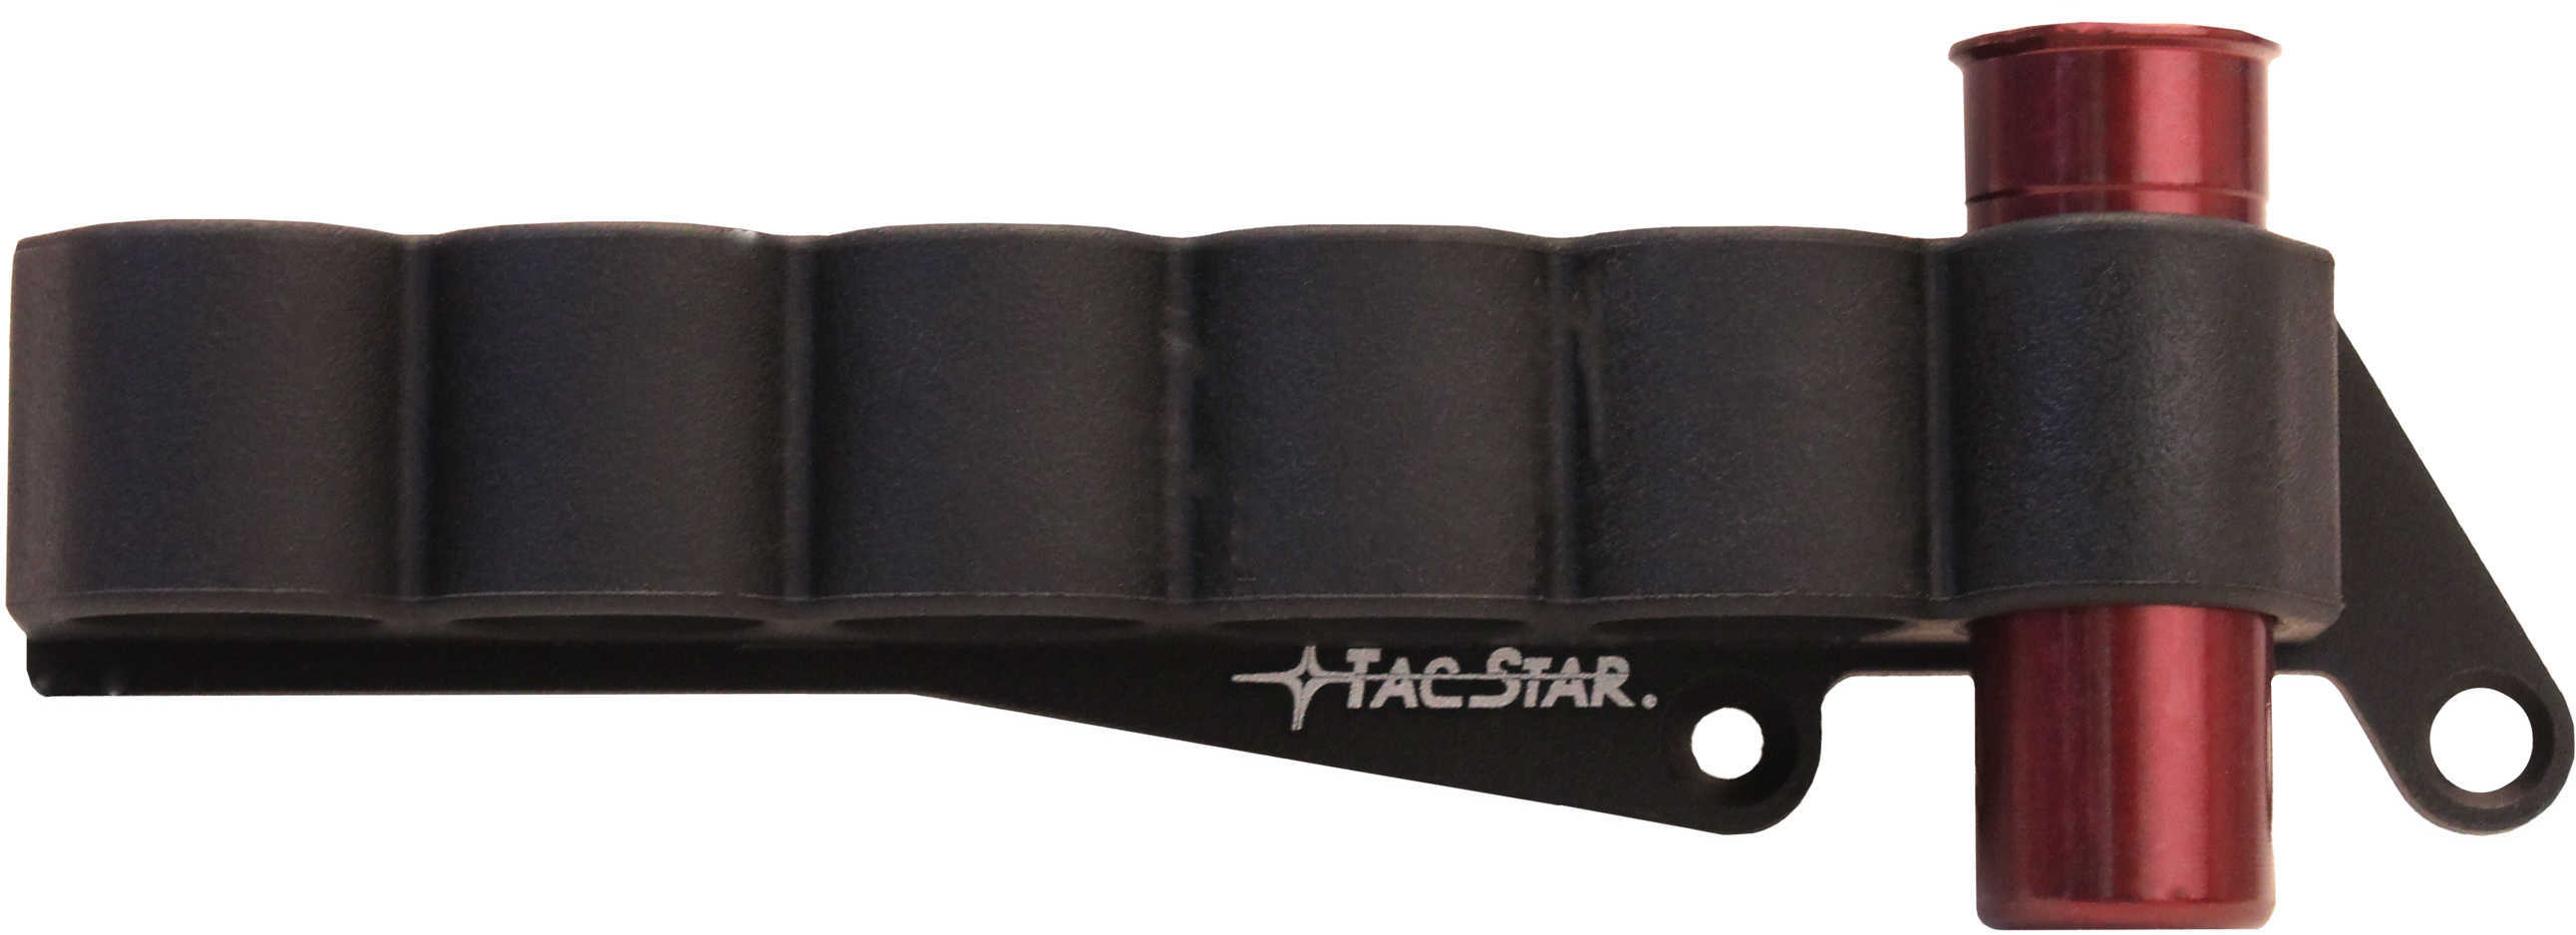 TACSTAR Slimline Sidesaddle Rem 870 1081211-img-1